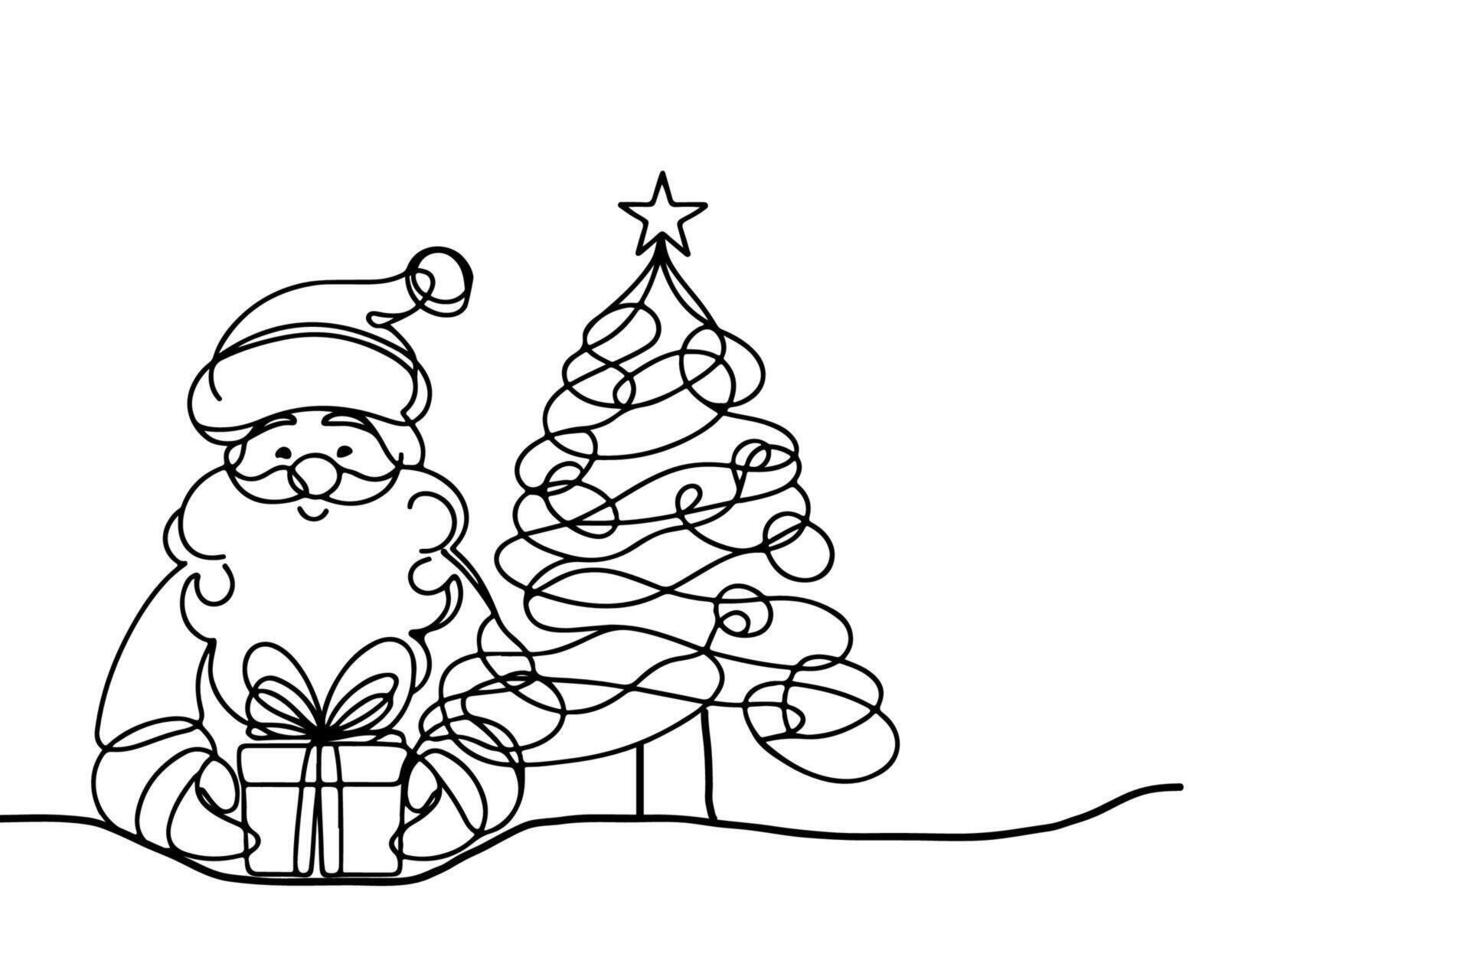 ai generiert ne kontinuierlich schwarz Linie Kunst Zeichnung von fröhlich Weihnachten Baum. Hand gezeichnet von Santa claus Gliederung Gekritzel Vektor Illustration